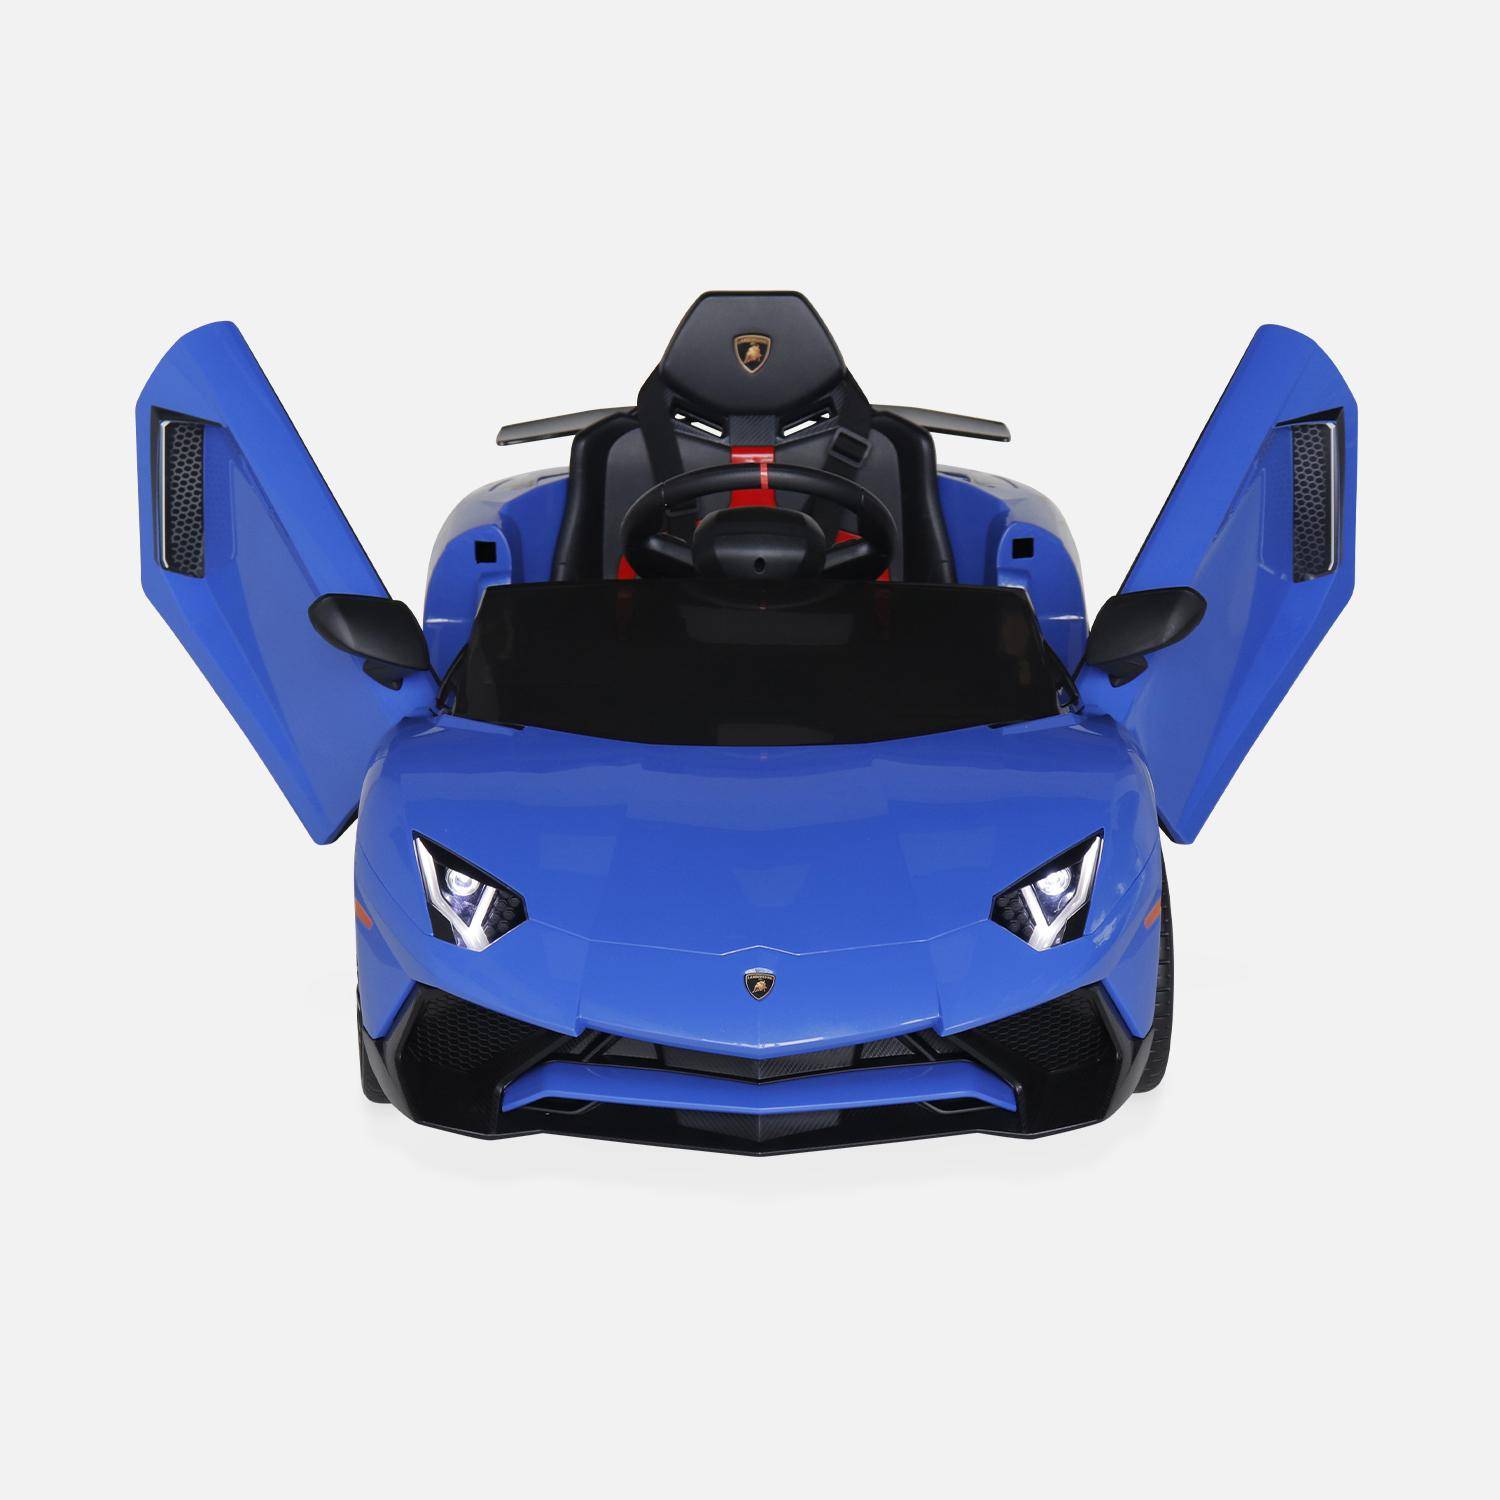 Voiture électrique 12V pour enfant Lamborghini, bleu, 1 place, avec autoradio, télécommande, MP3, port USB et phares fonctionnels,sweeek,Photo6